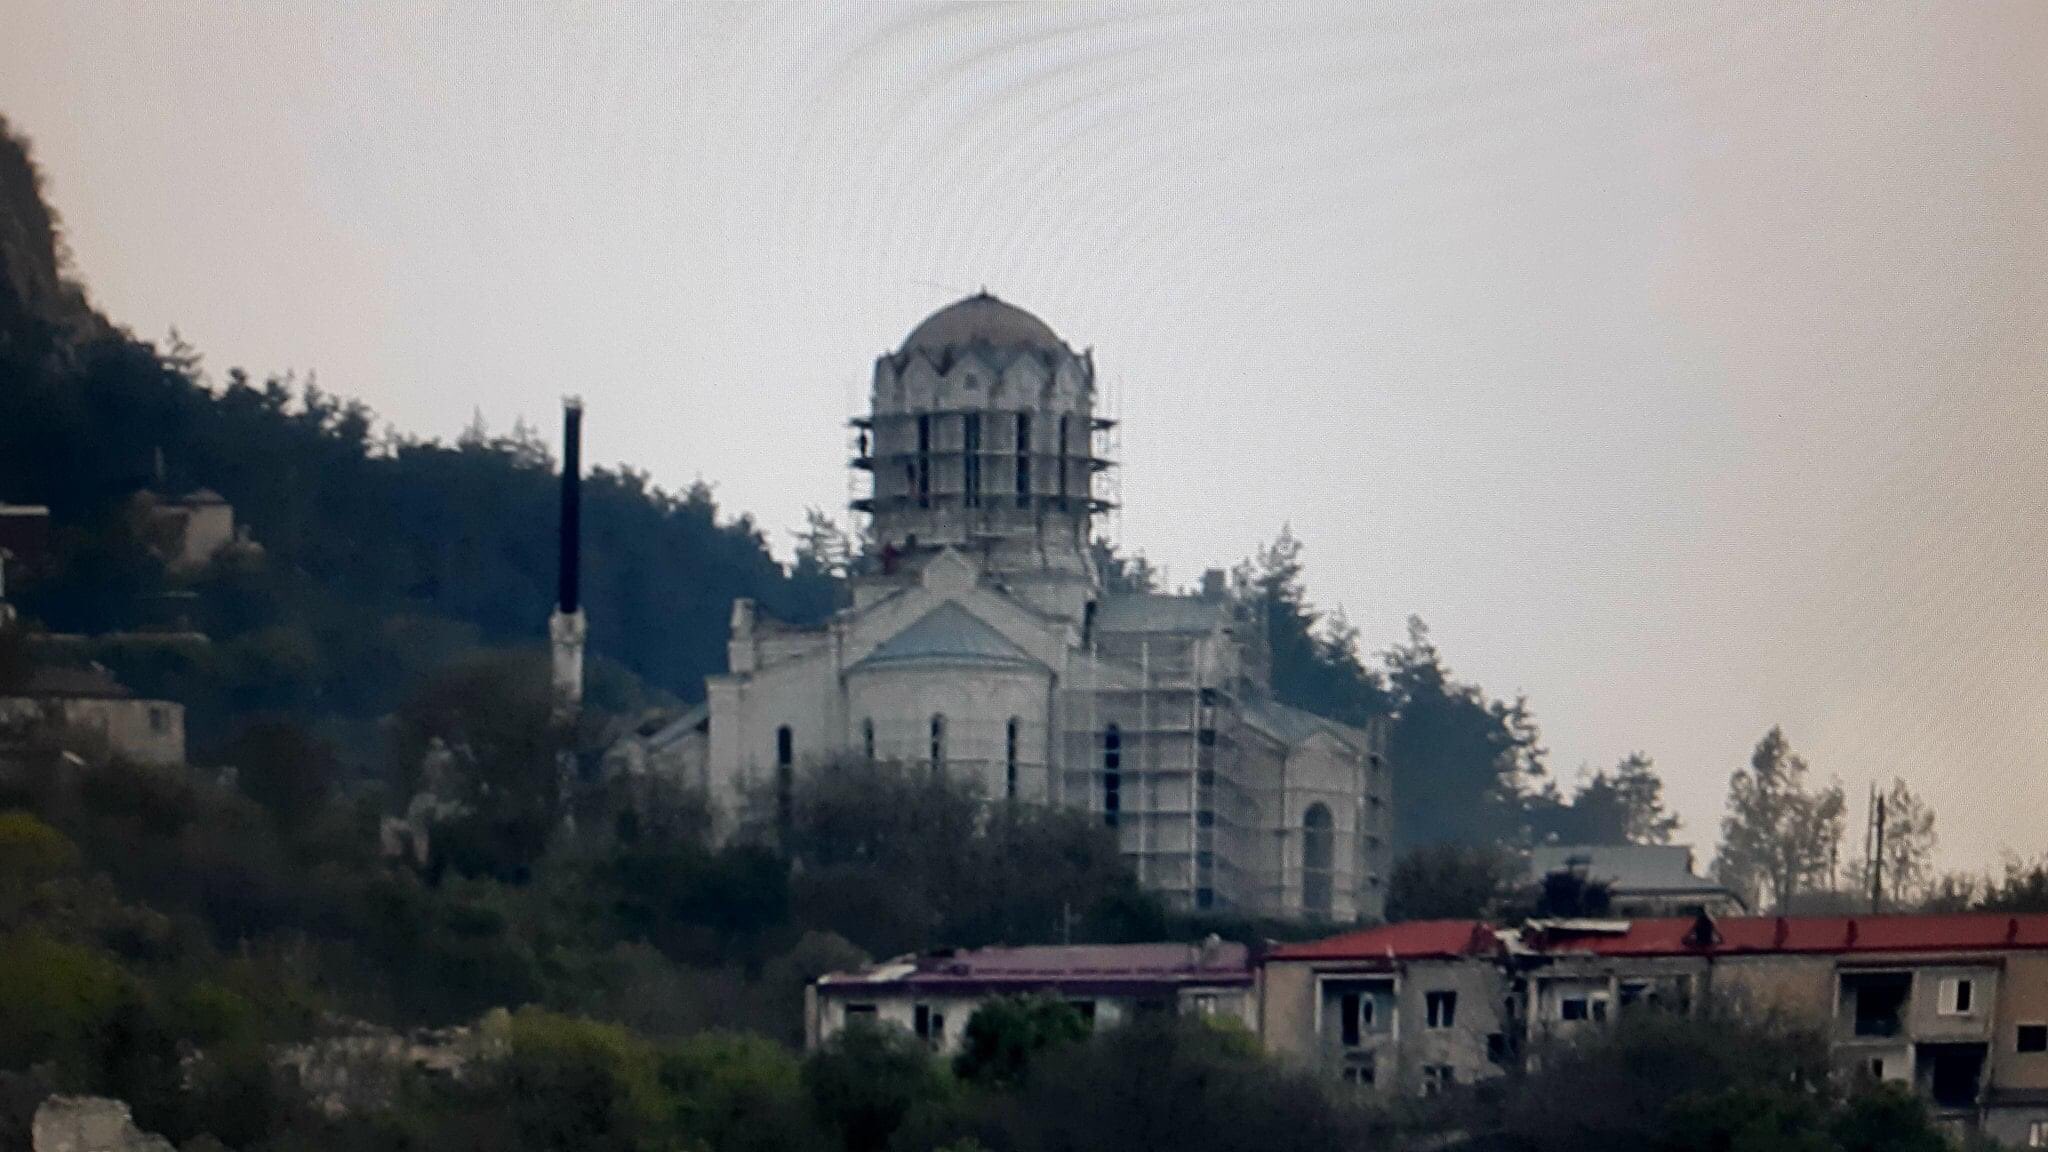 Շուշիի մայր տաճարը պետք է մնա Հայ առաքելական եկեղեցու պաշտամունքի վայր. Այվազյան